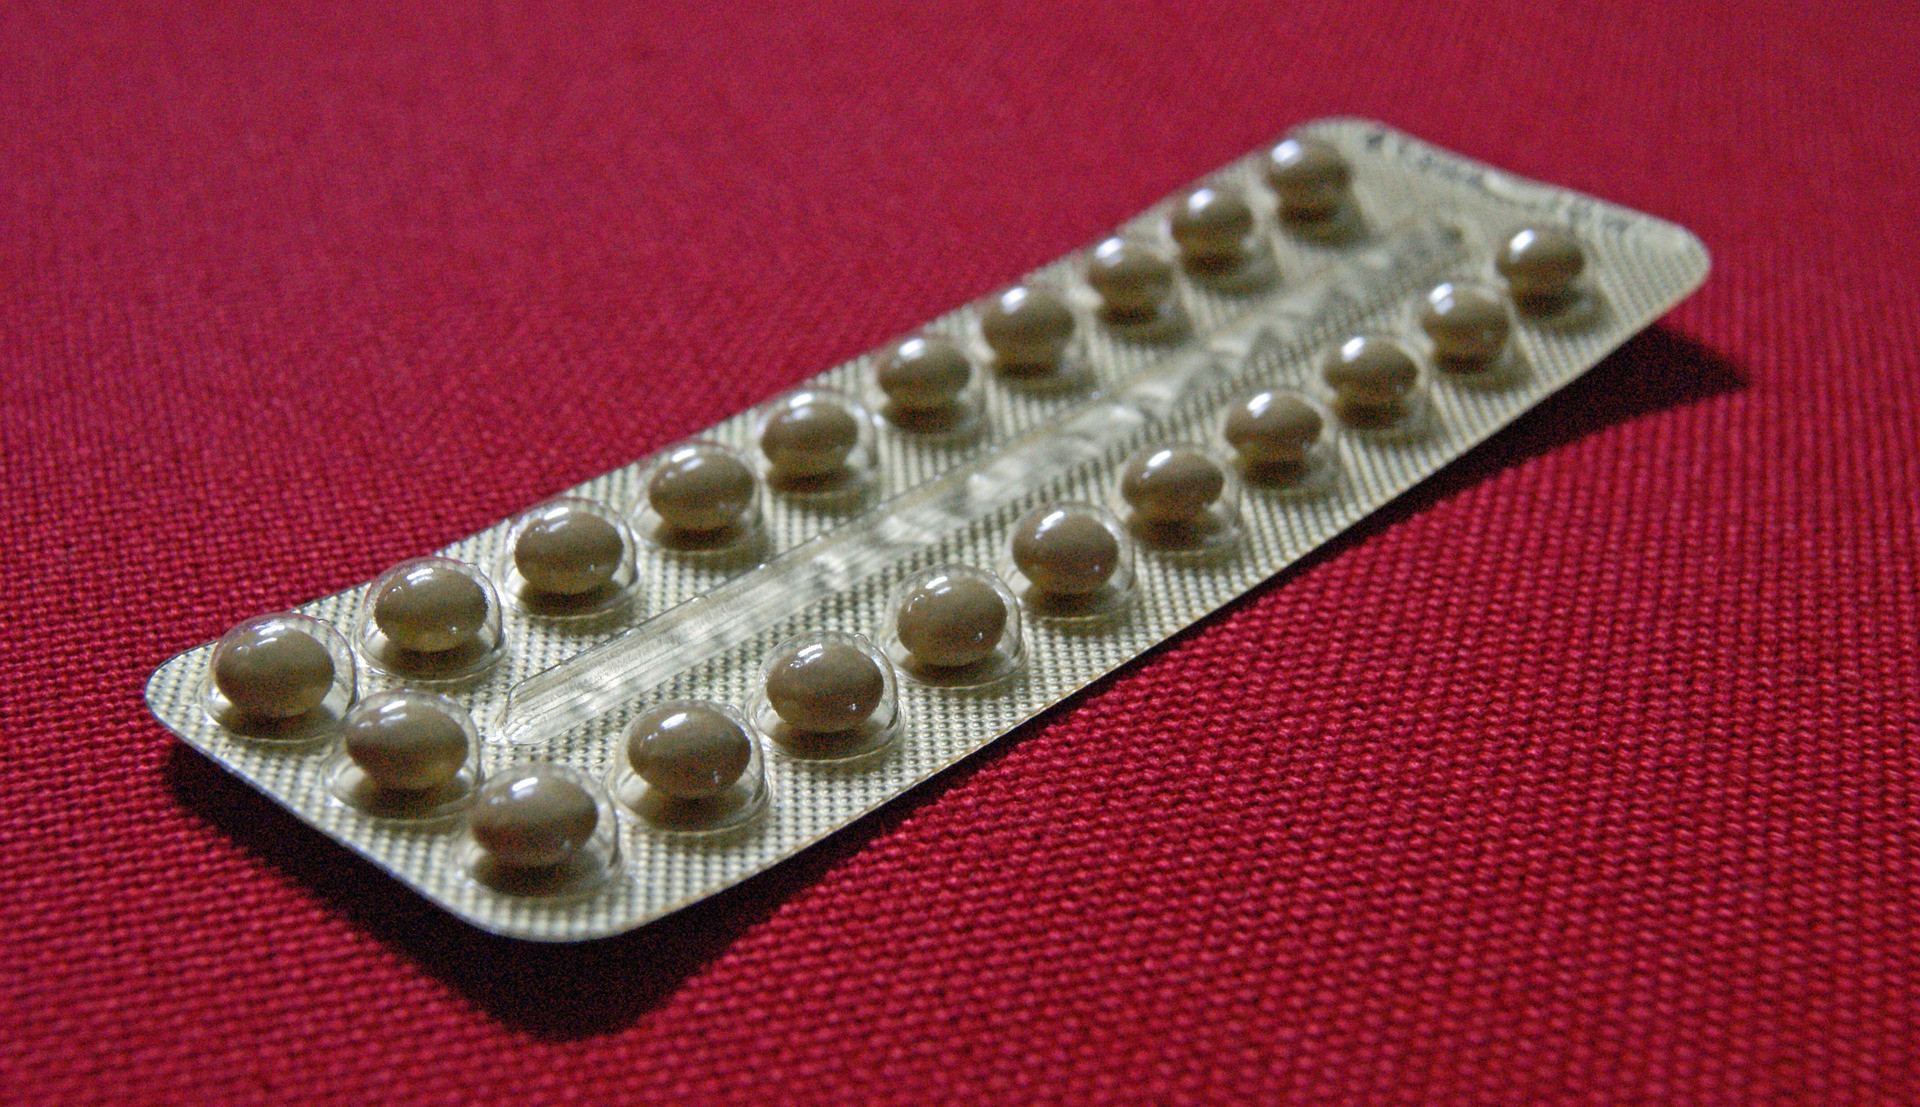 Ženy, ktoré začali čoskoro menštruovať a naopak neskôr sa u nich dostavila menopauza, čelia vyššiemu riziku rakoviny prsníka, pretože boli dlhšie vystavené pôsobeniu hormónov estrogénu a progesterónu, ktoré vznikajú vo vaječníkoch. Viac ohrozené môžu byť aj ženy v prechode, ktoré užívajú hormonálnu substitúciu.

Čo sa týka hormonálnej antikoncepcie, tá môže v niektorých prípadoch zvyšovať riziko rakoviny krčka maternice, ale existujú aj štúdie, ktoré dokazujú, že naopak znižuje pravdepodobnosť prepuknutia iných typov rakoviny, napríklad maternice, konečníka alebo vaječníkov.